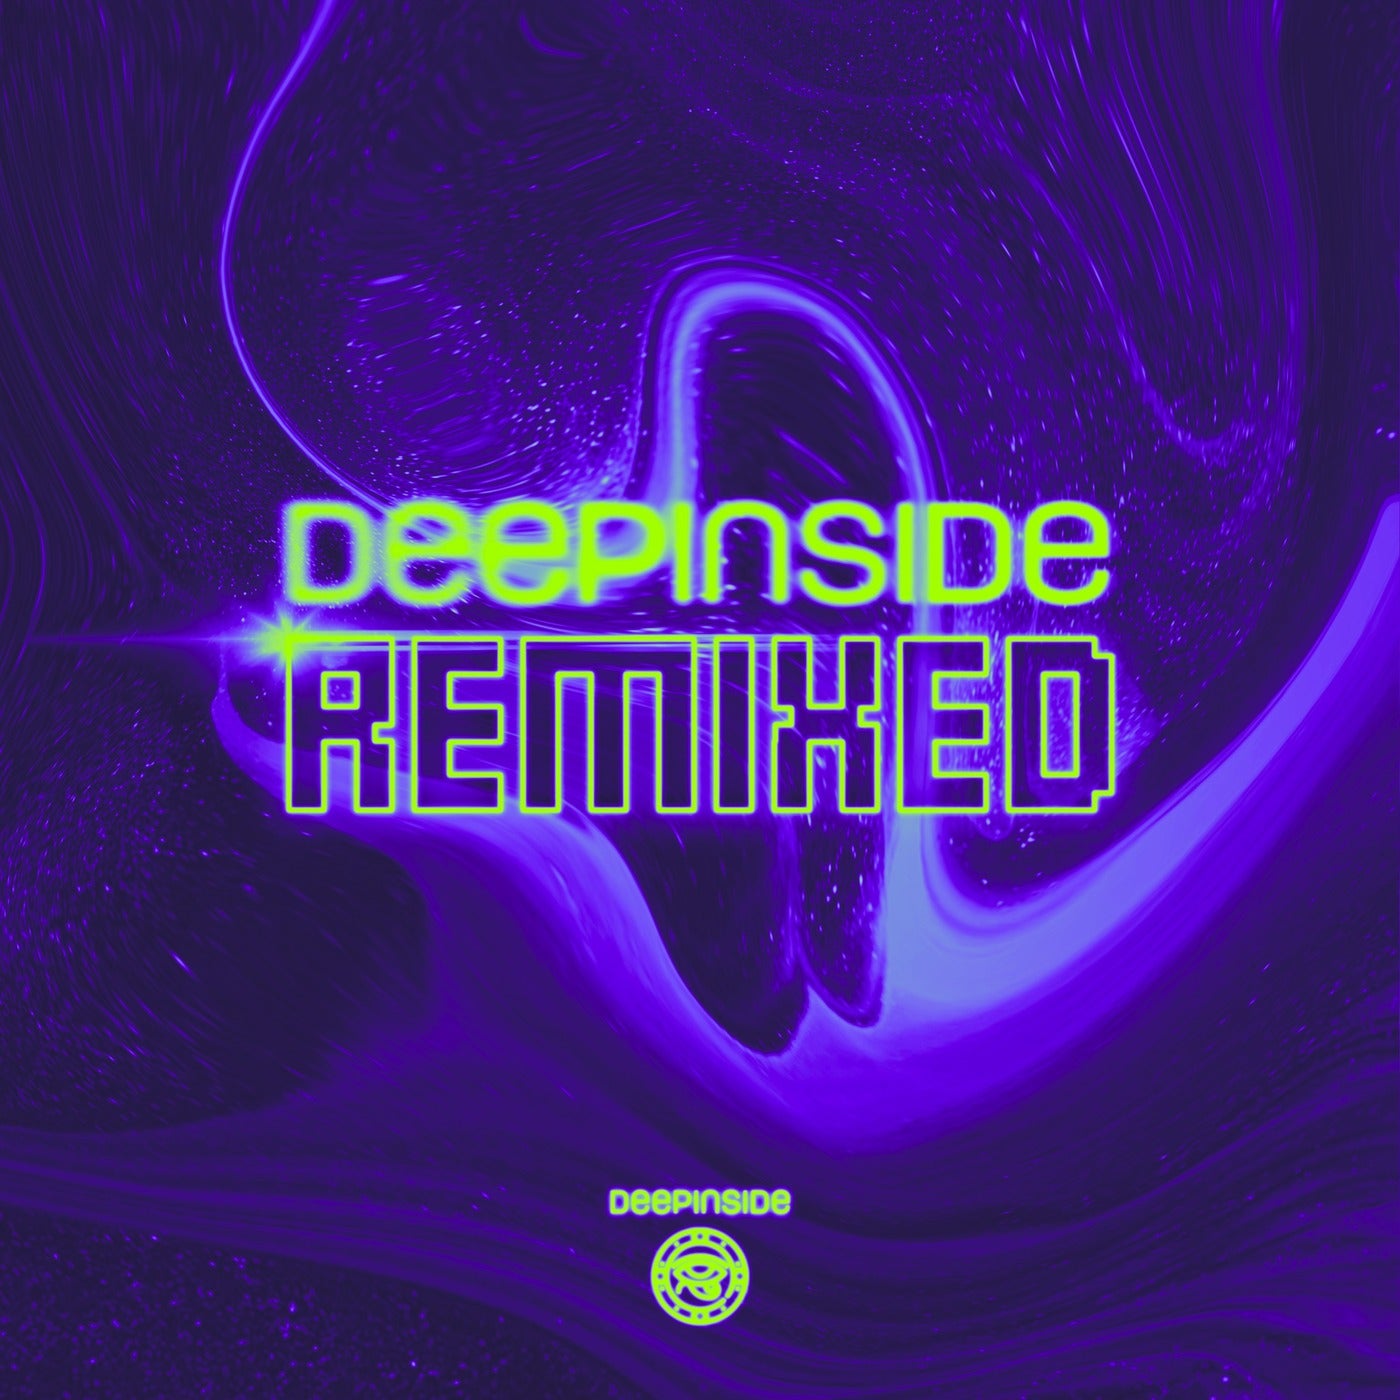 Deepinside Remixed